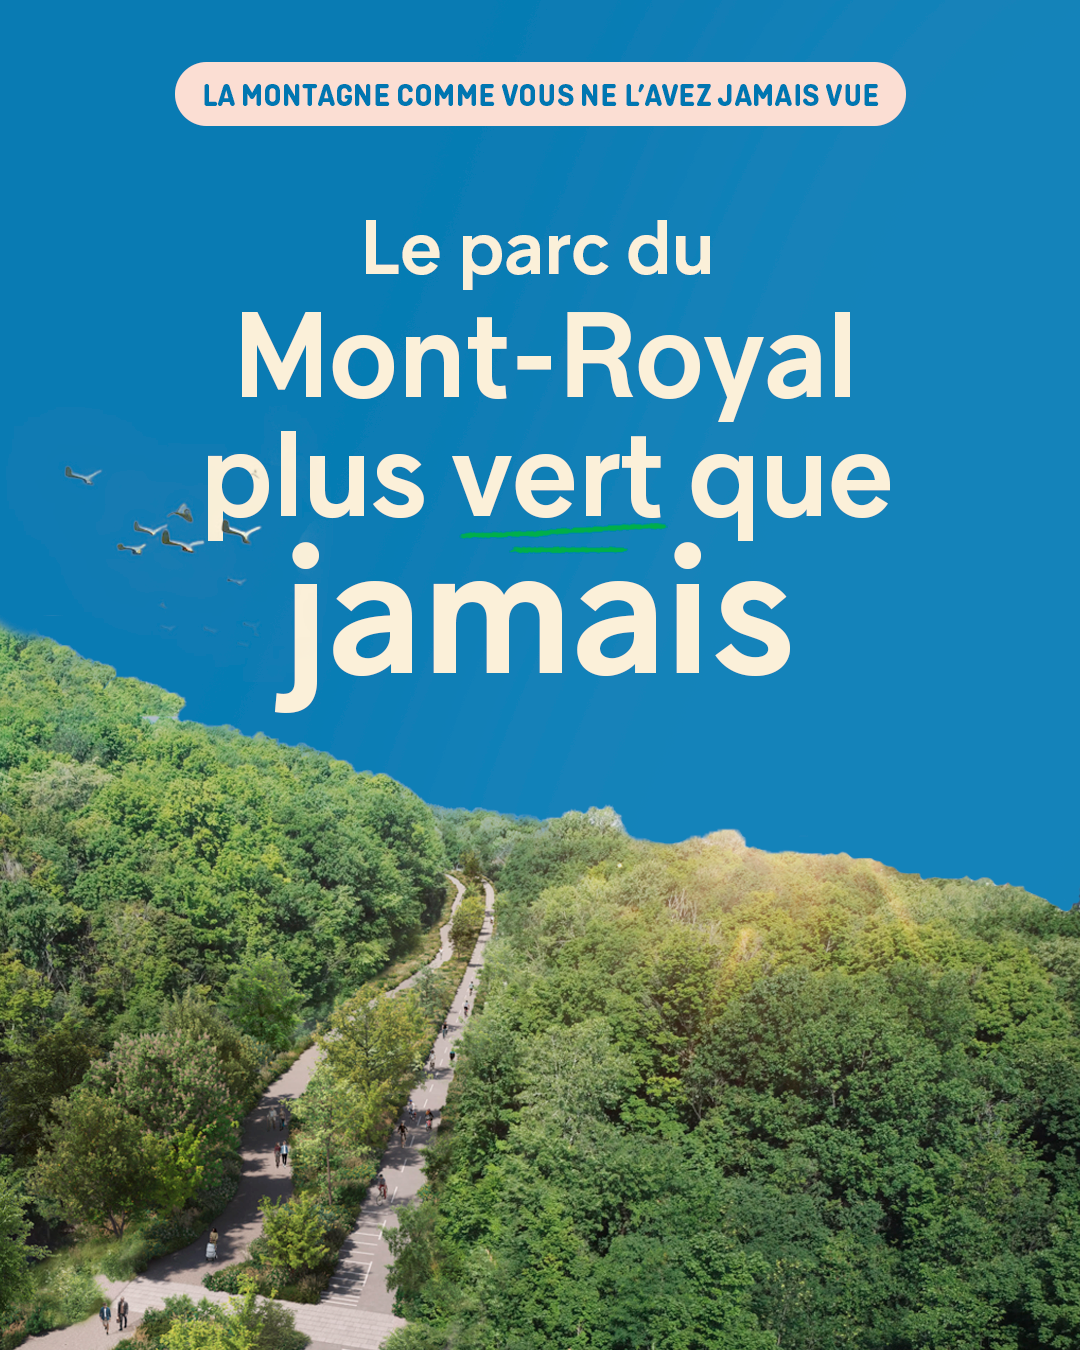 Parc du Mont-Royal - Une montagne plus grande, plus verte et plus sécuritaire